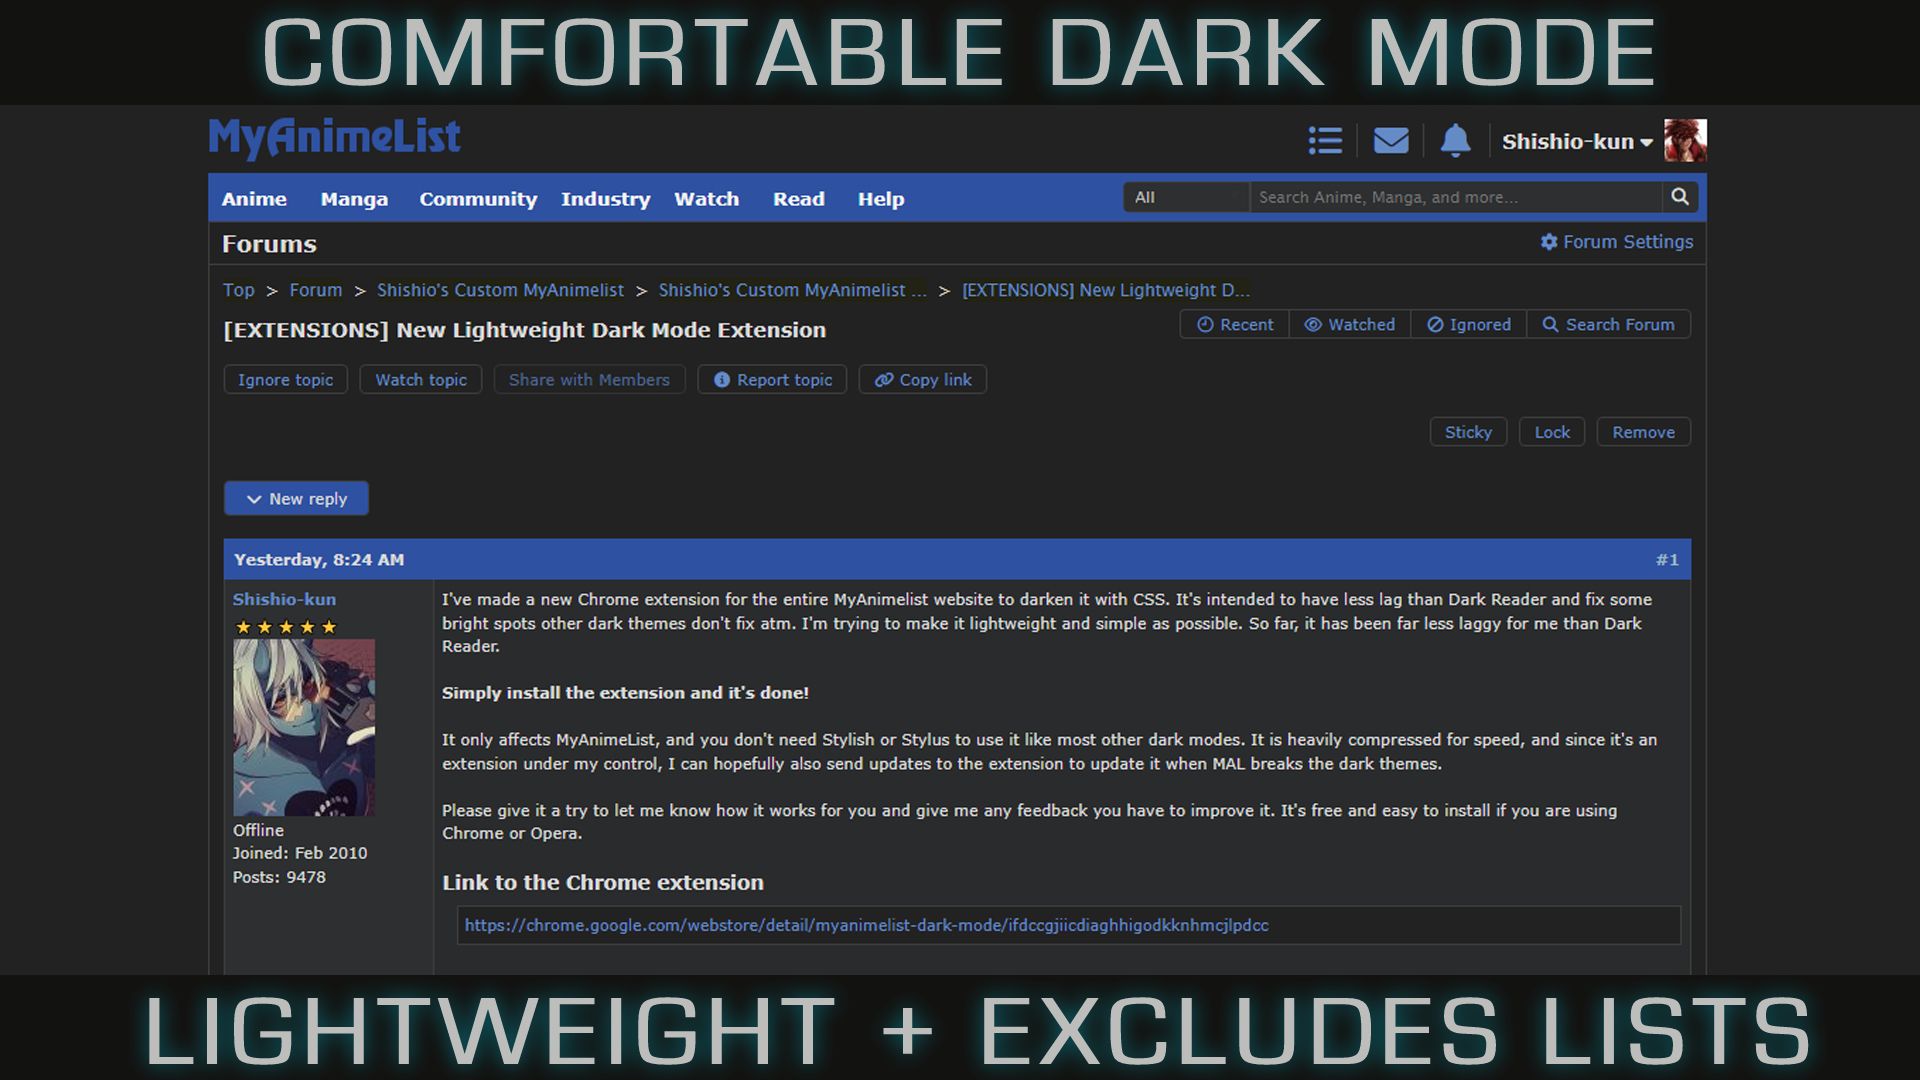 Screenshot of Comfortable Dark Mode - Excludes Lists